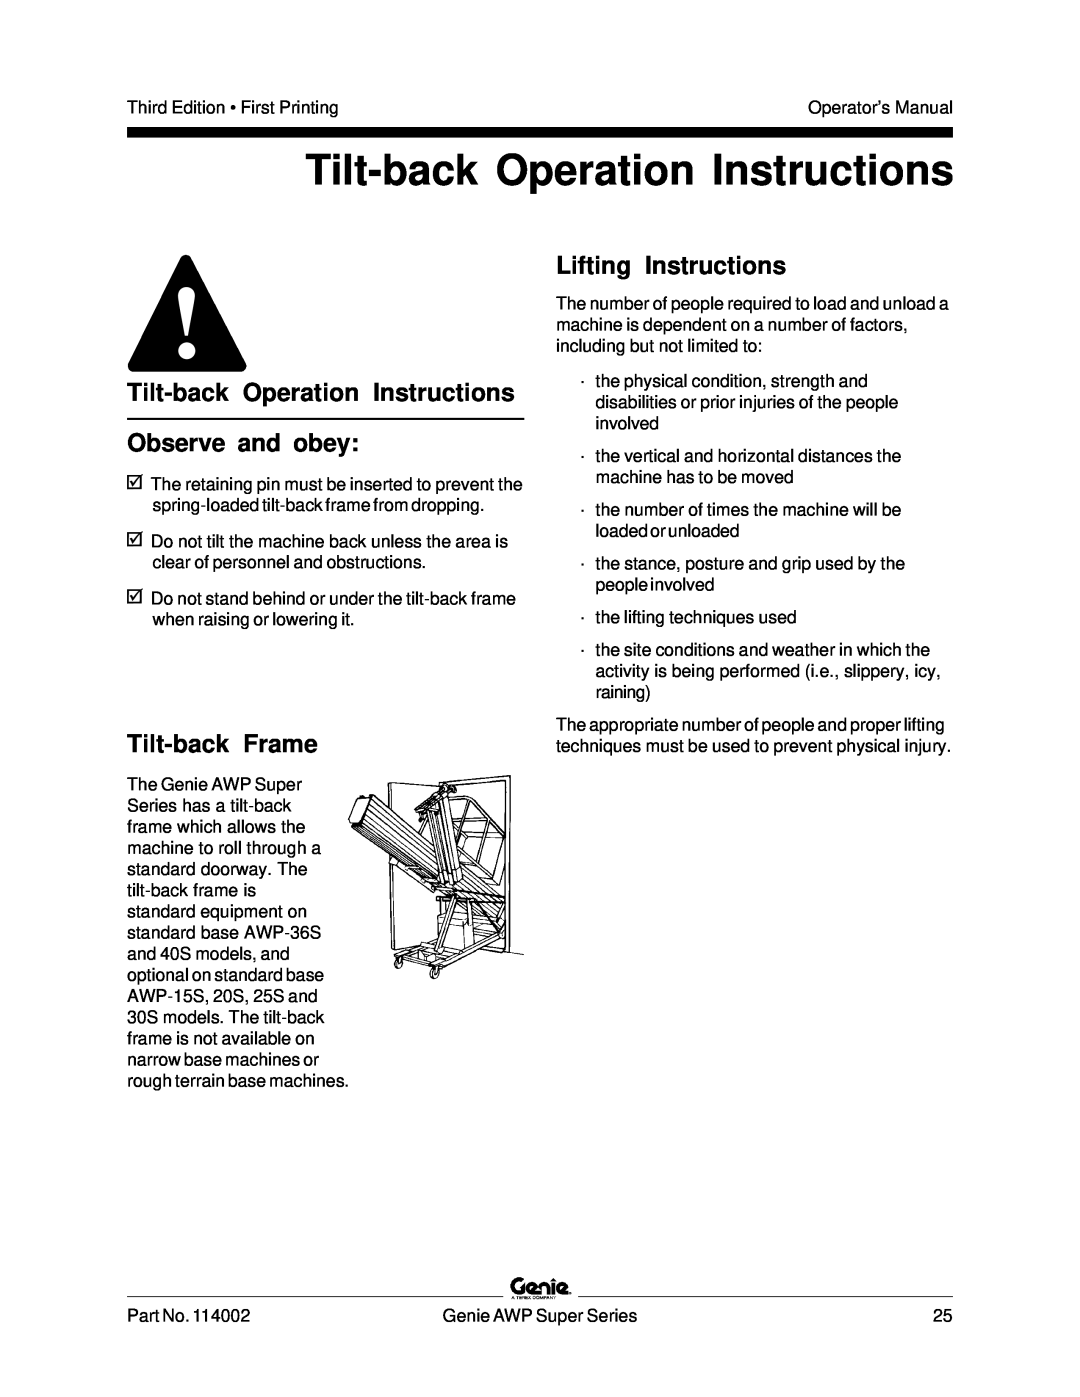 Genie 114002 manual Tilt-back Operation Instructions Observe and obey, Tilt-back Frame, Lifting Instructions 